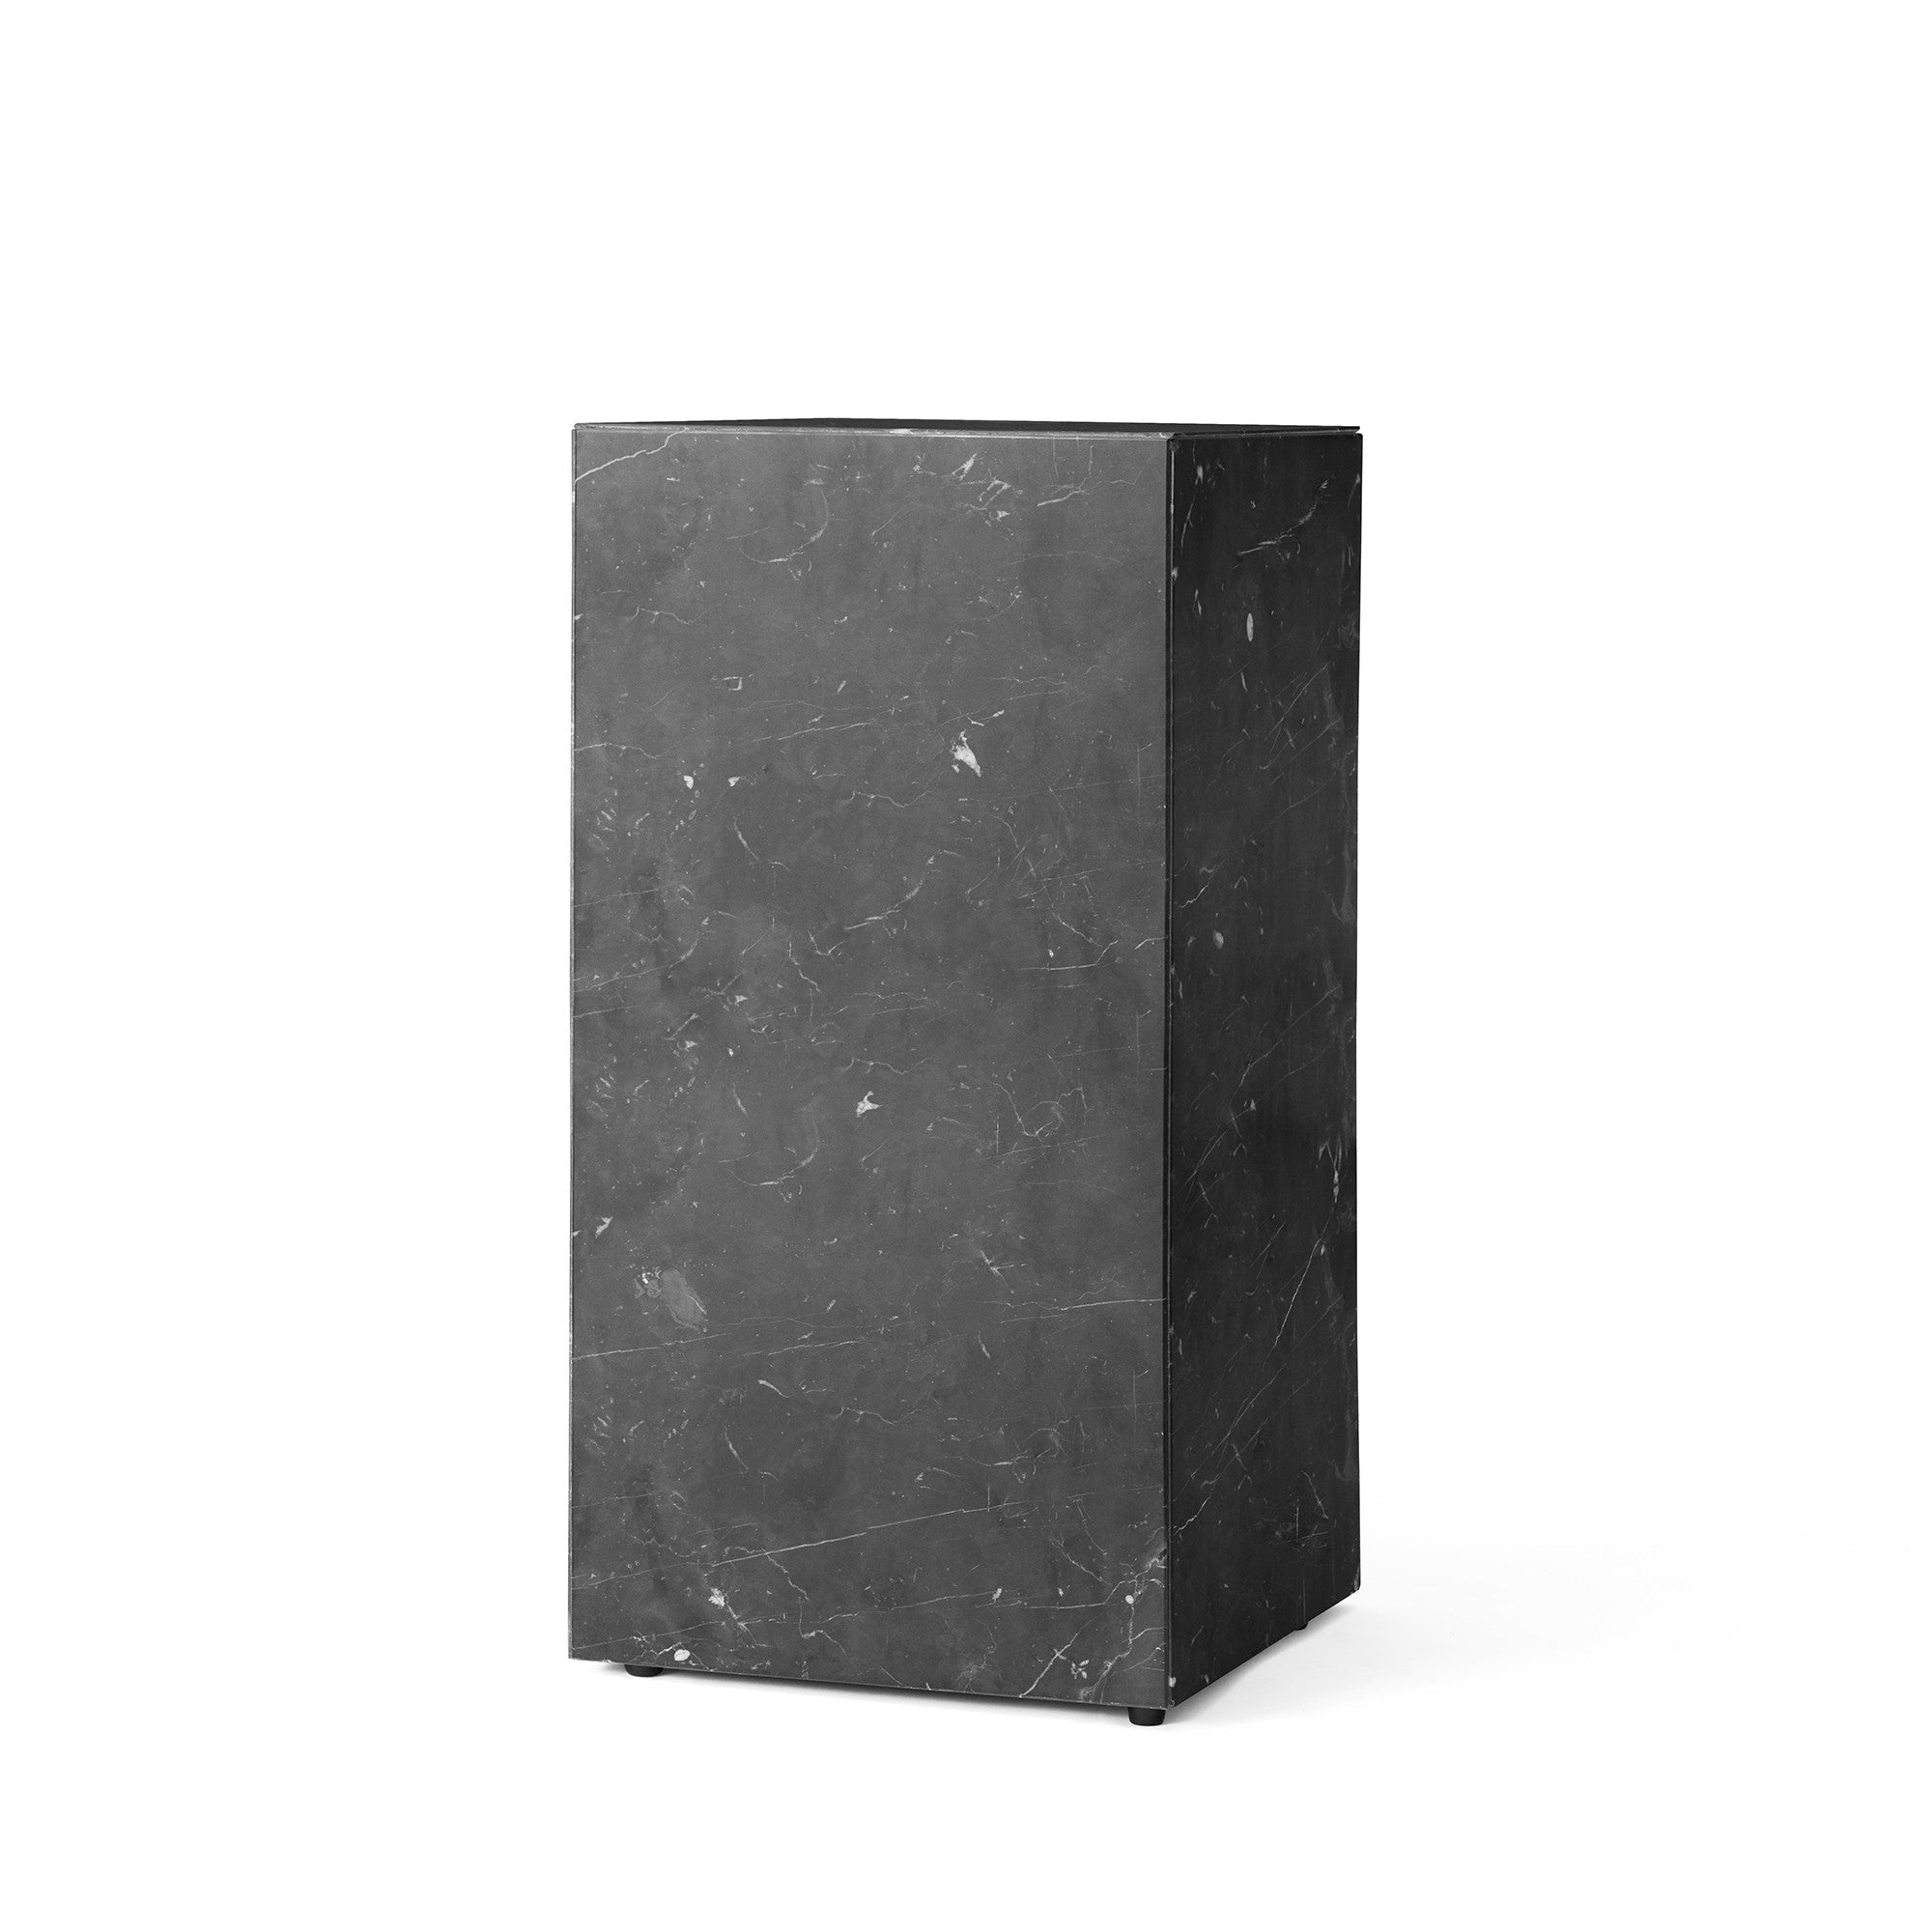 Plinth măsuță rectangulară înaltă